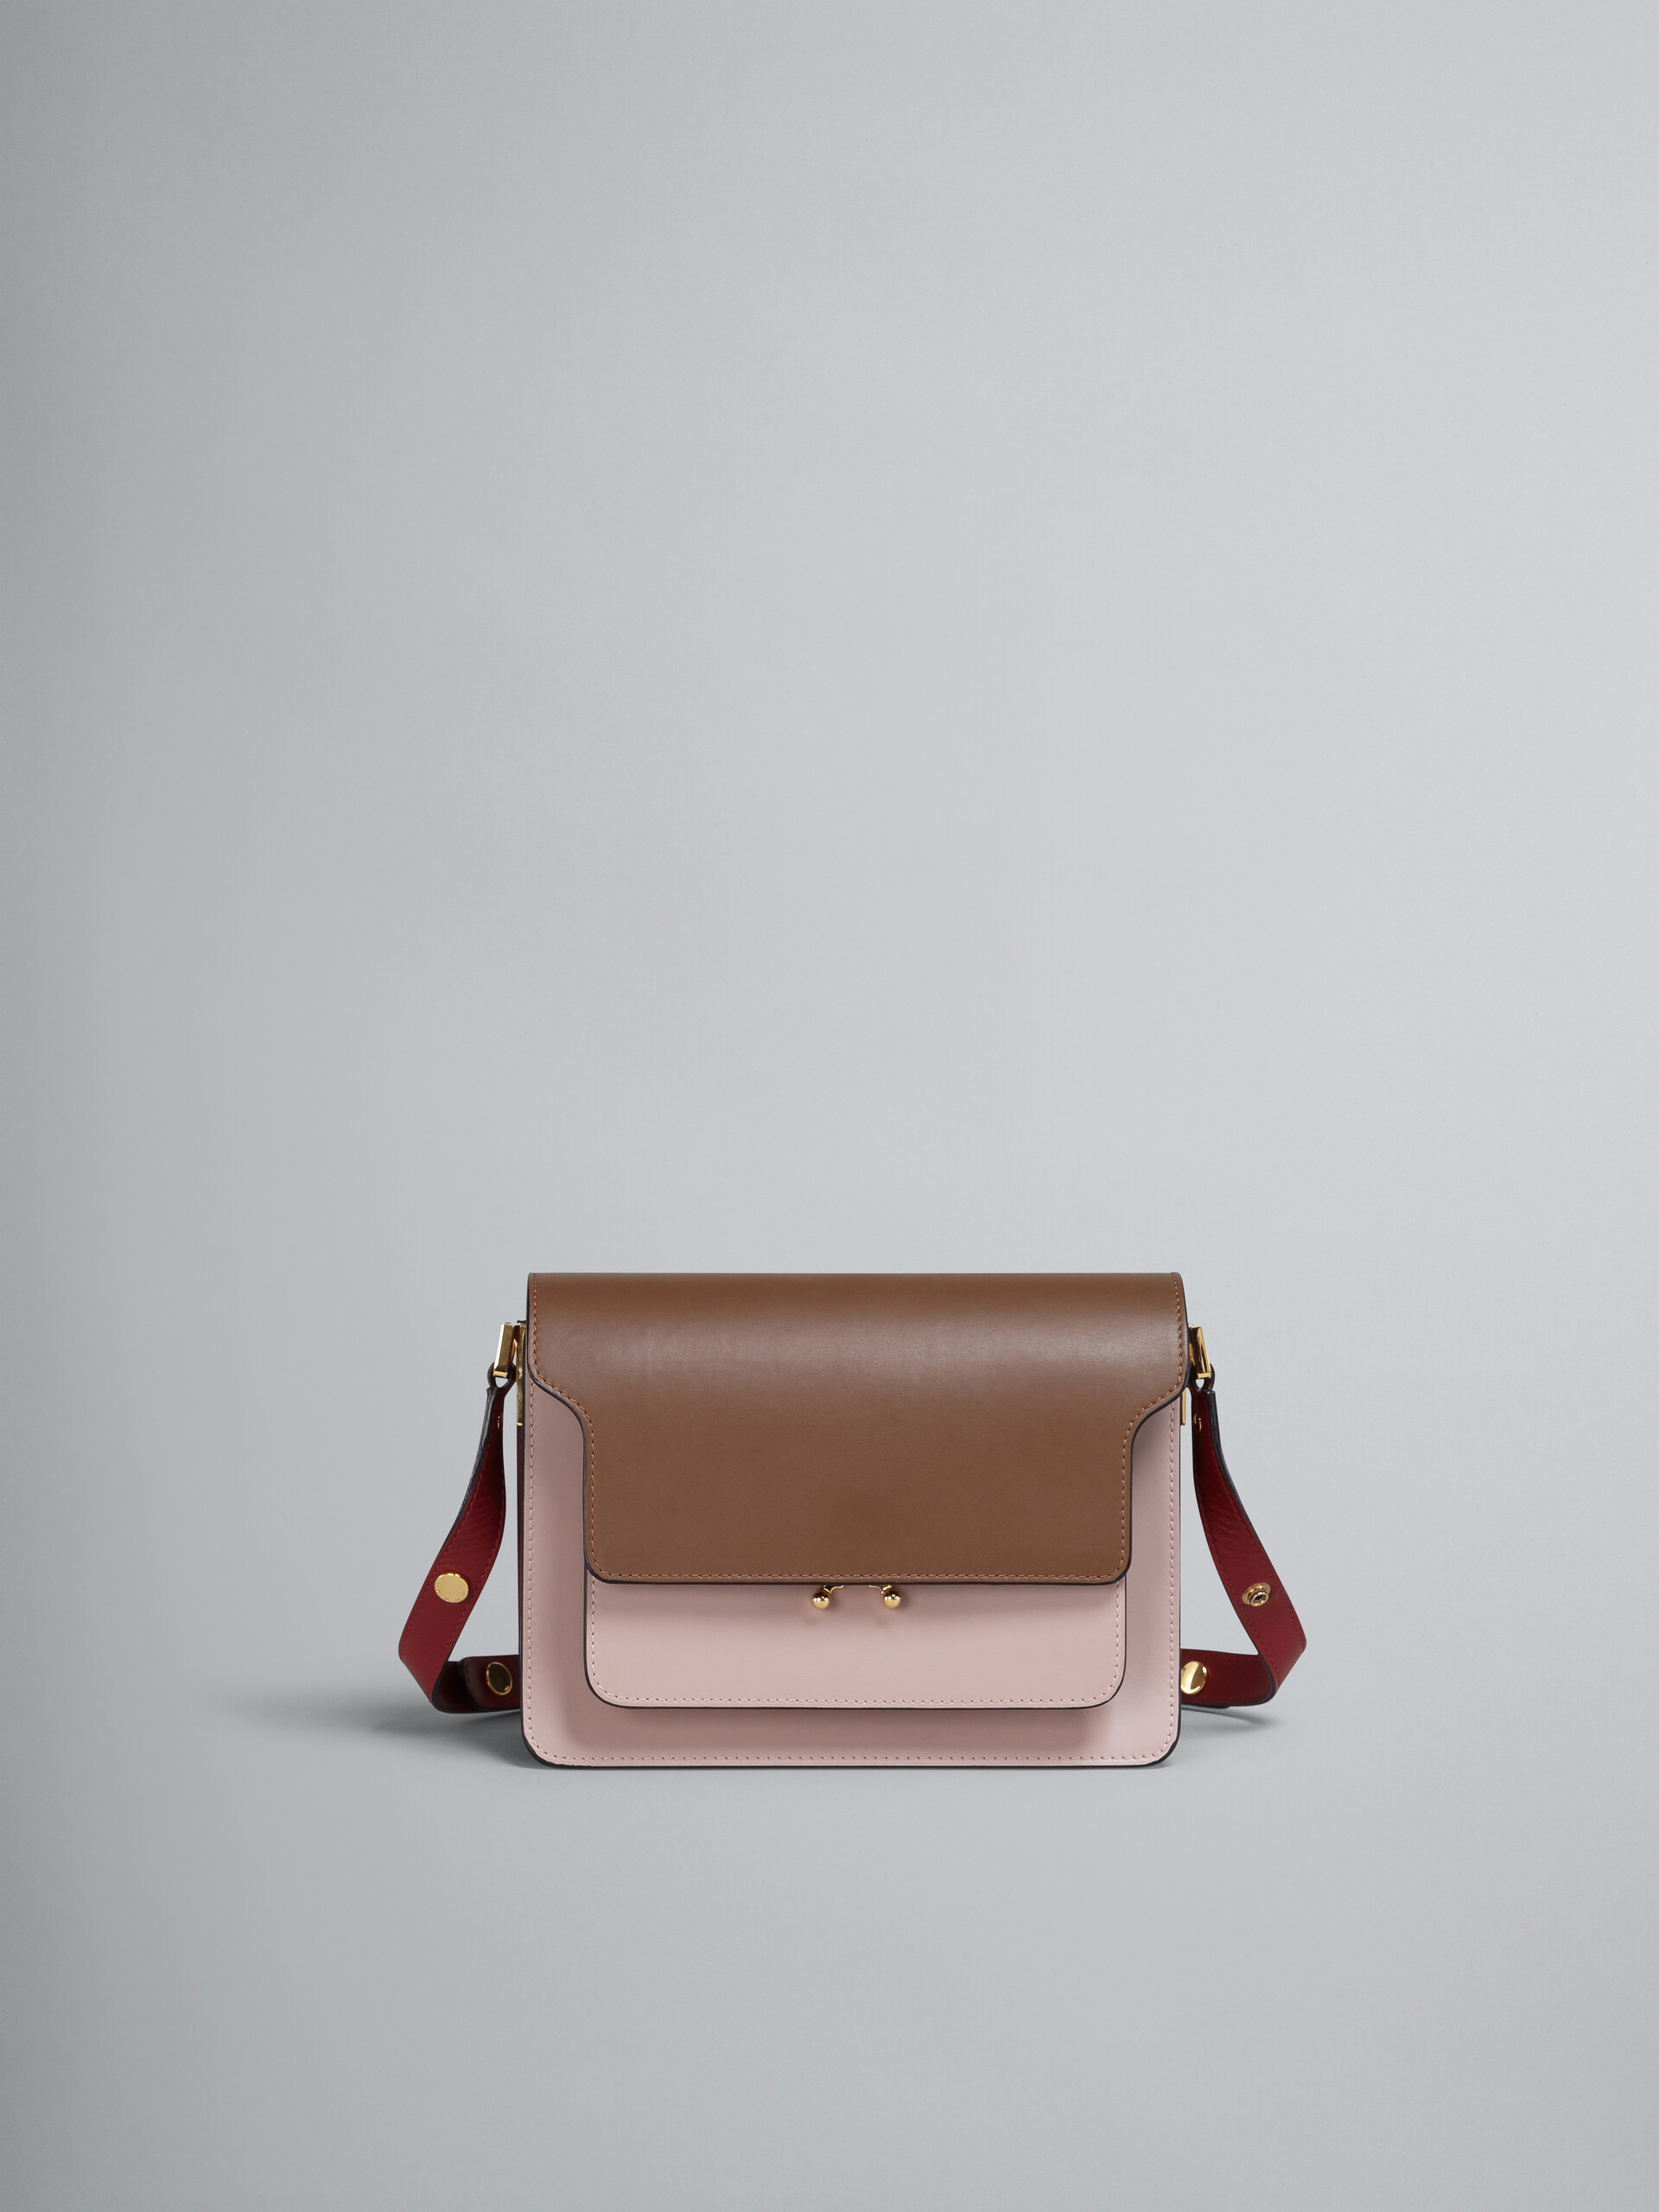 Bolso TRUNK de piel marrón rosa y roja - Bolsos de hombro - Image 1